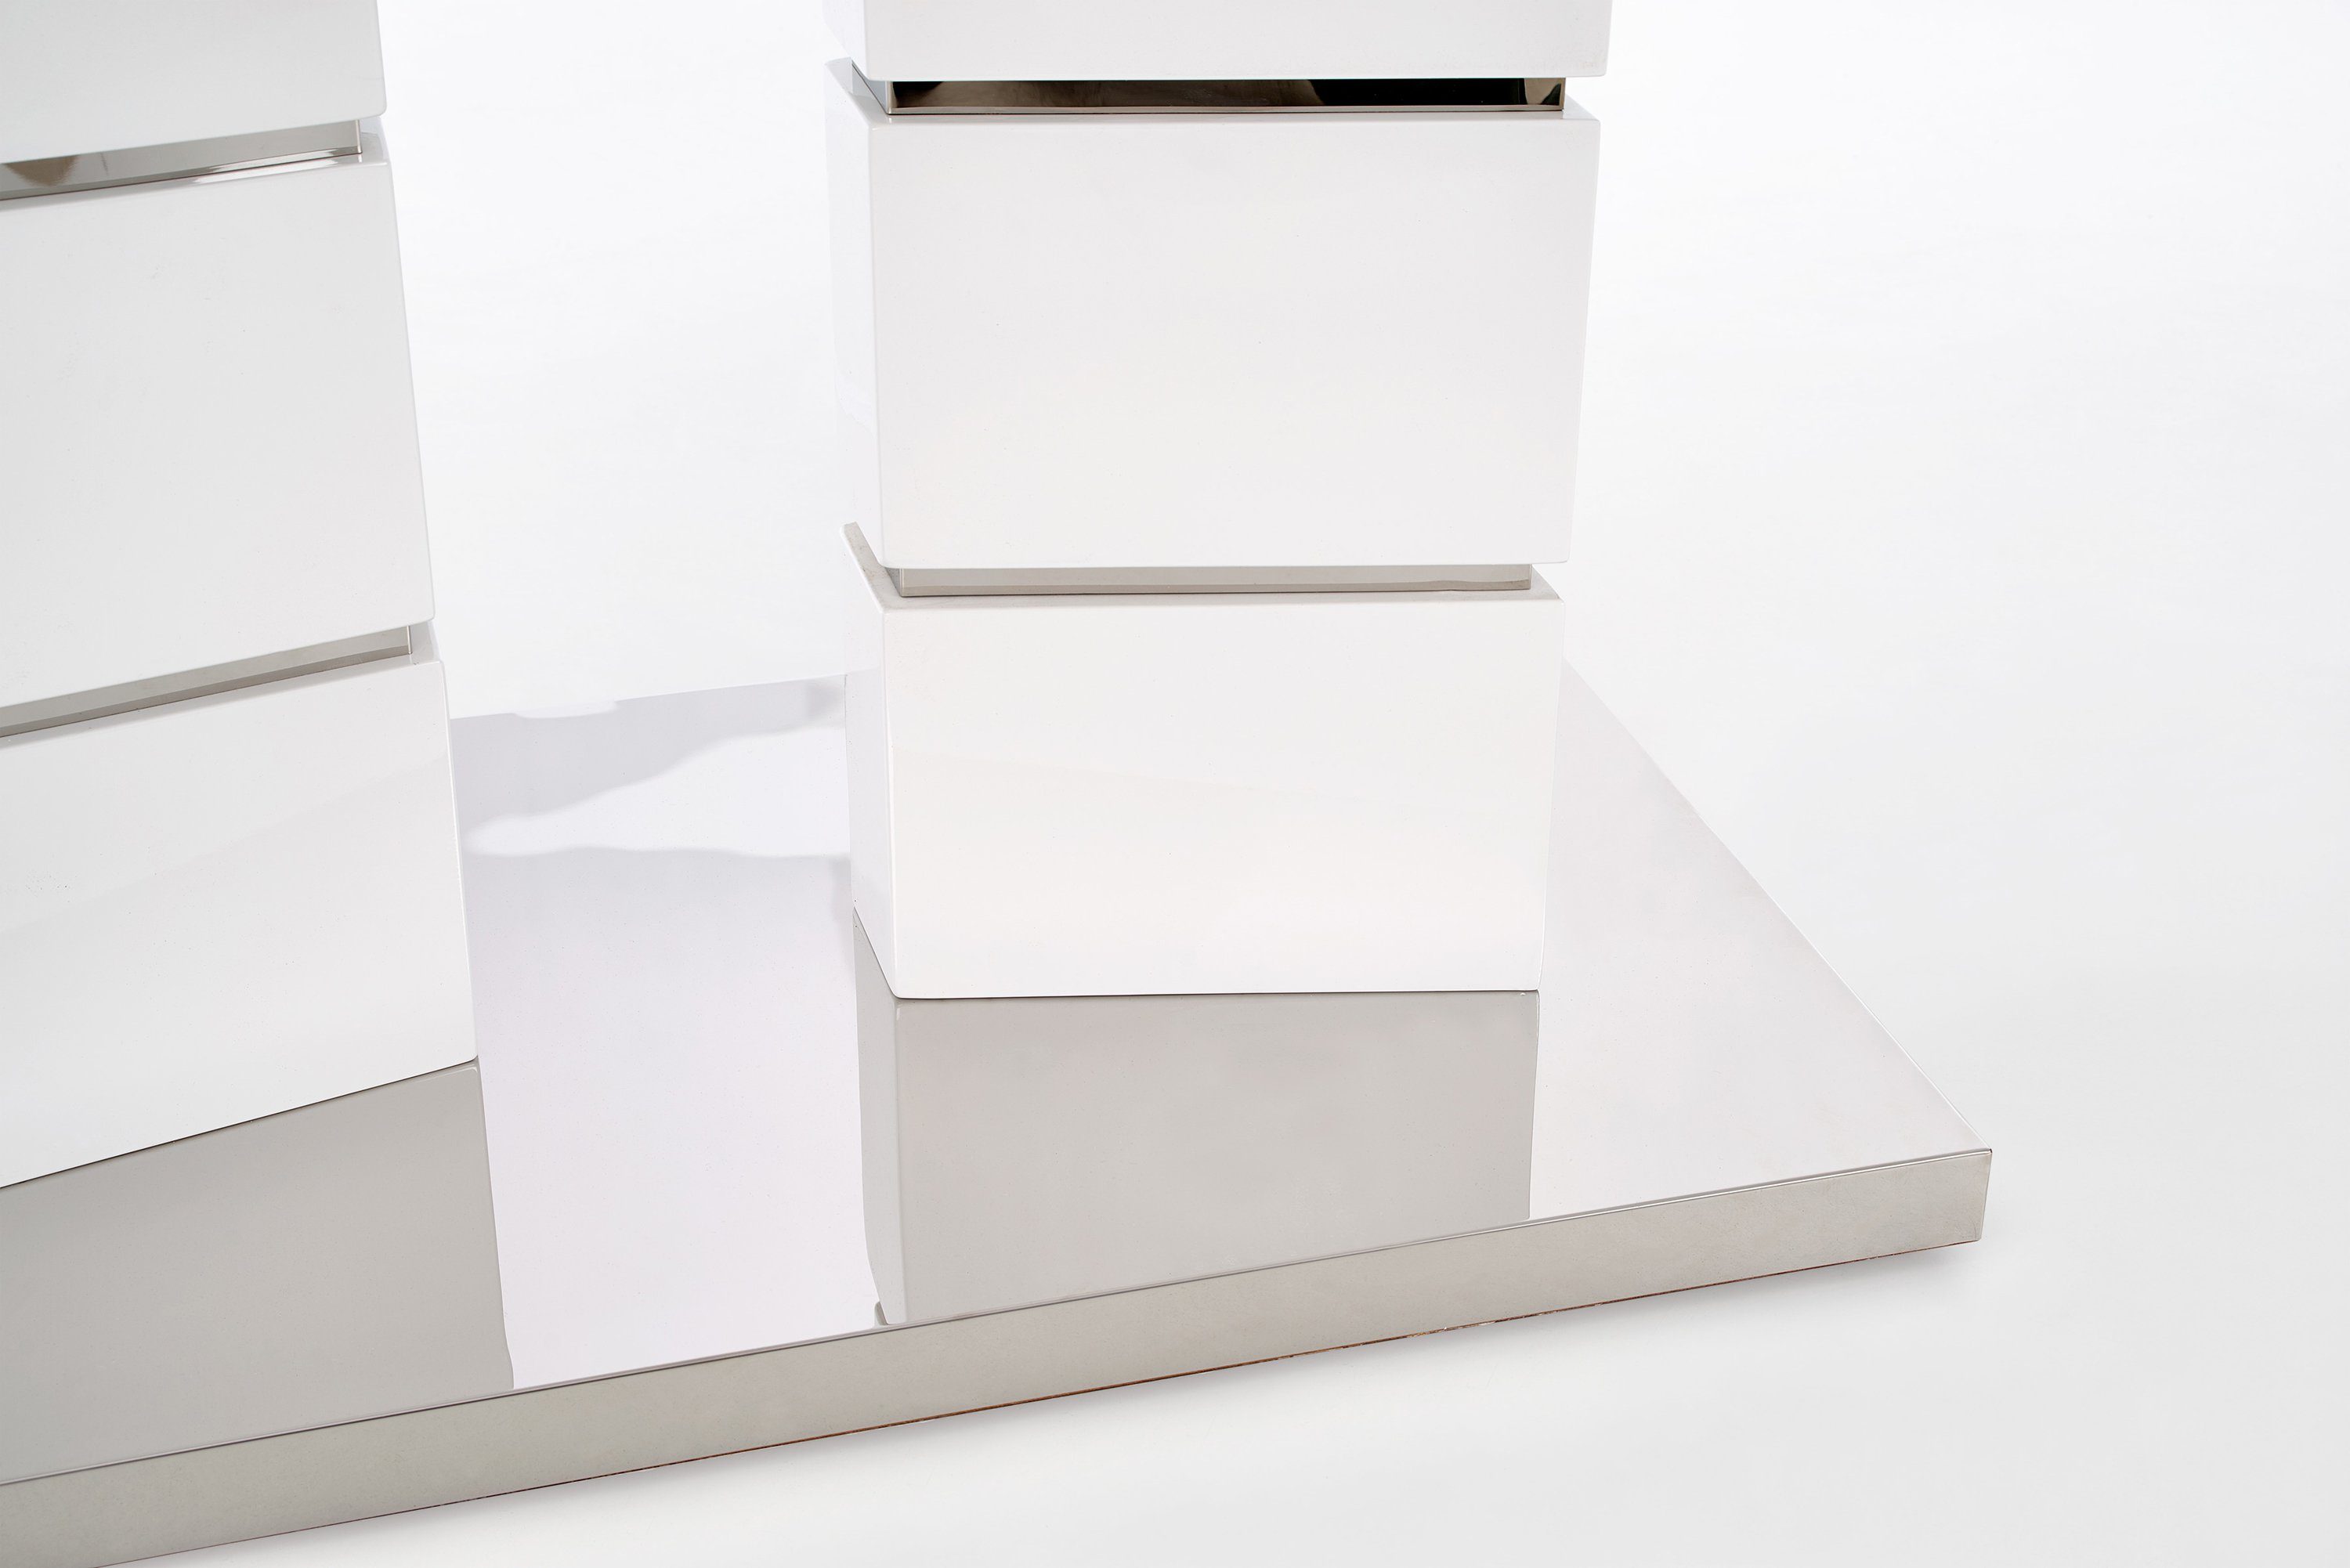 ausziehbar bis 200 Design Esstisch Esstisch HA-333 cm Weiß Hochglanz 160 Tisch designimpex